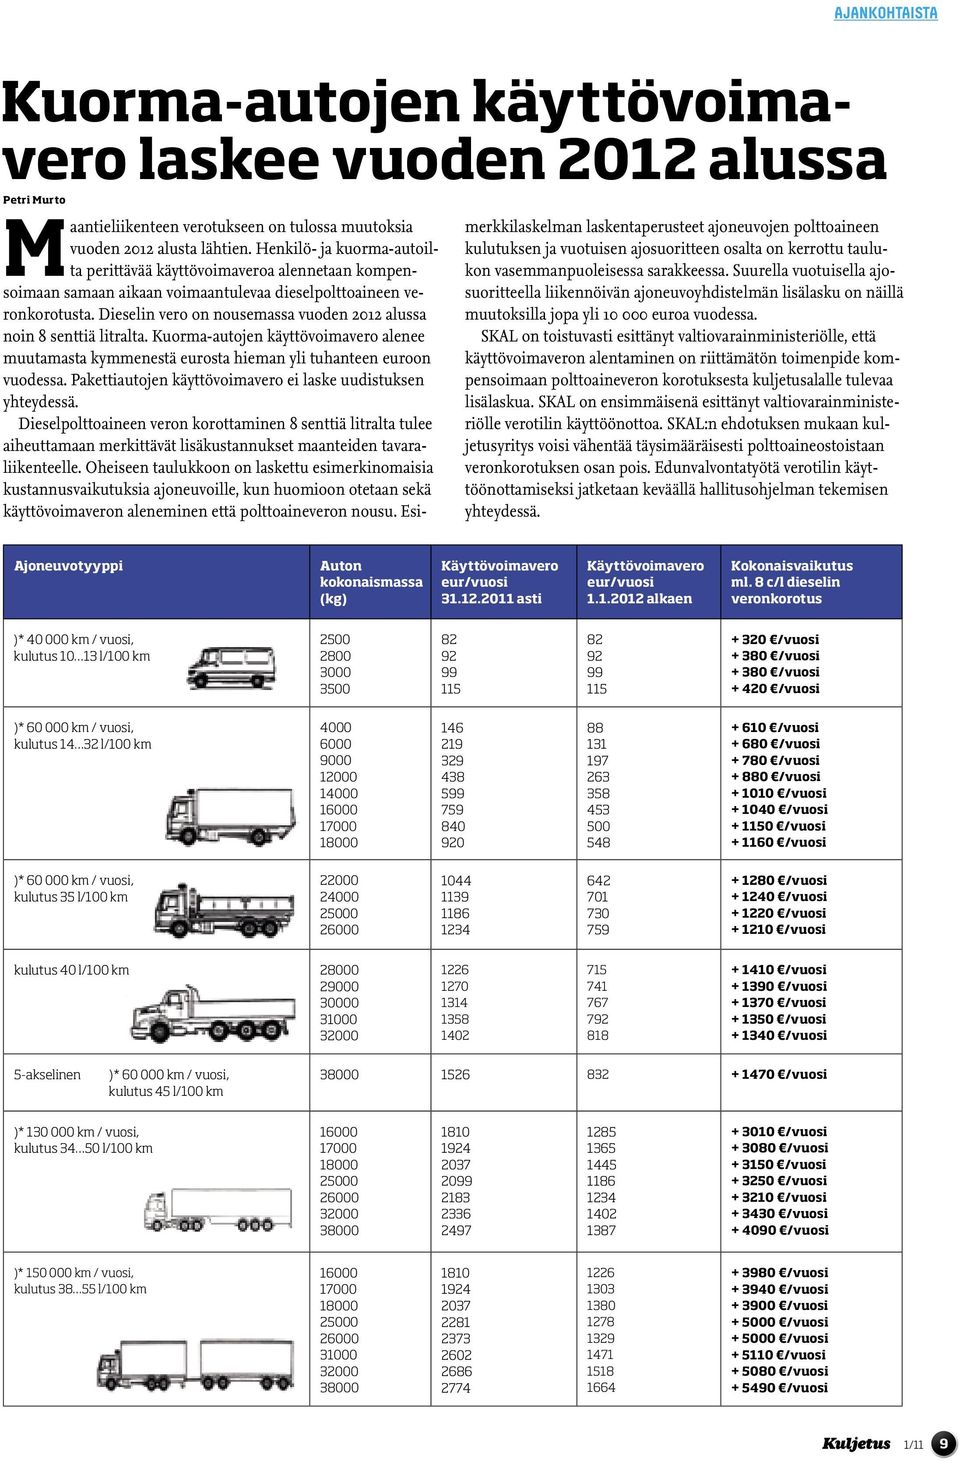 Dieselin vero on nousemassa vuoden 2012 alussa noin 8 senttiä litralta. Kuorma-autojen käyttövoimavero alenee muutamasta kymmenestä eurosta hieman yli tuhanteen euroon vuodessa.